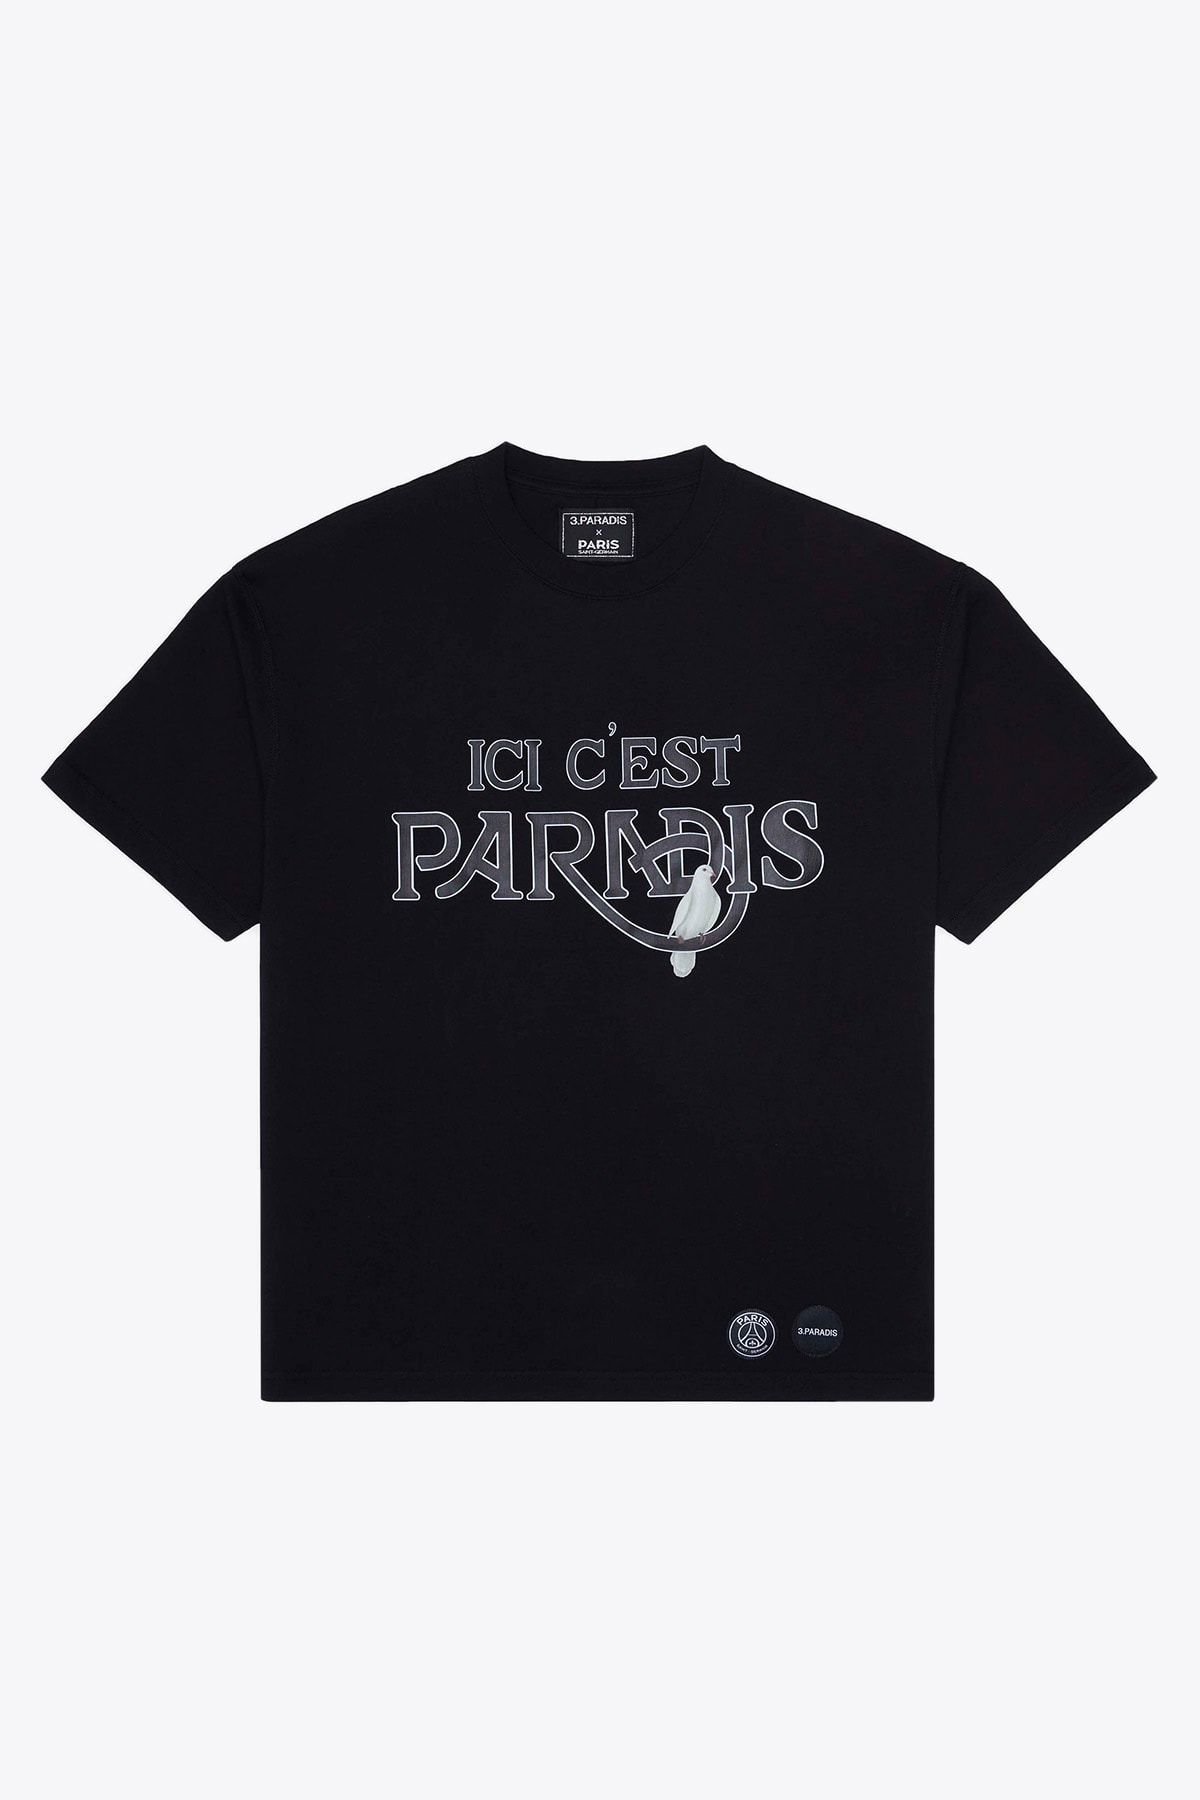 3.Paradis Ici Cest Paris T-shirt Black cotton PSG collab t-shirt with slogan - Ici Cest Paris T-shirt